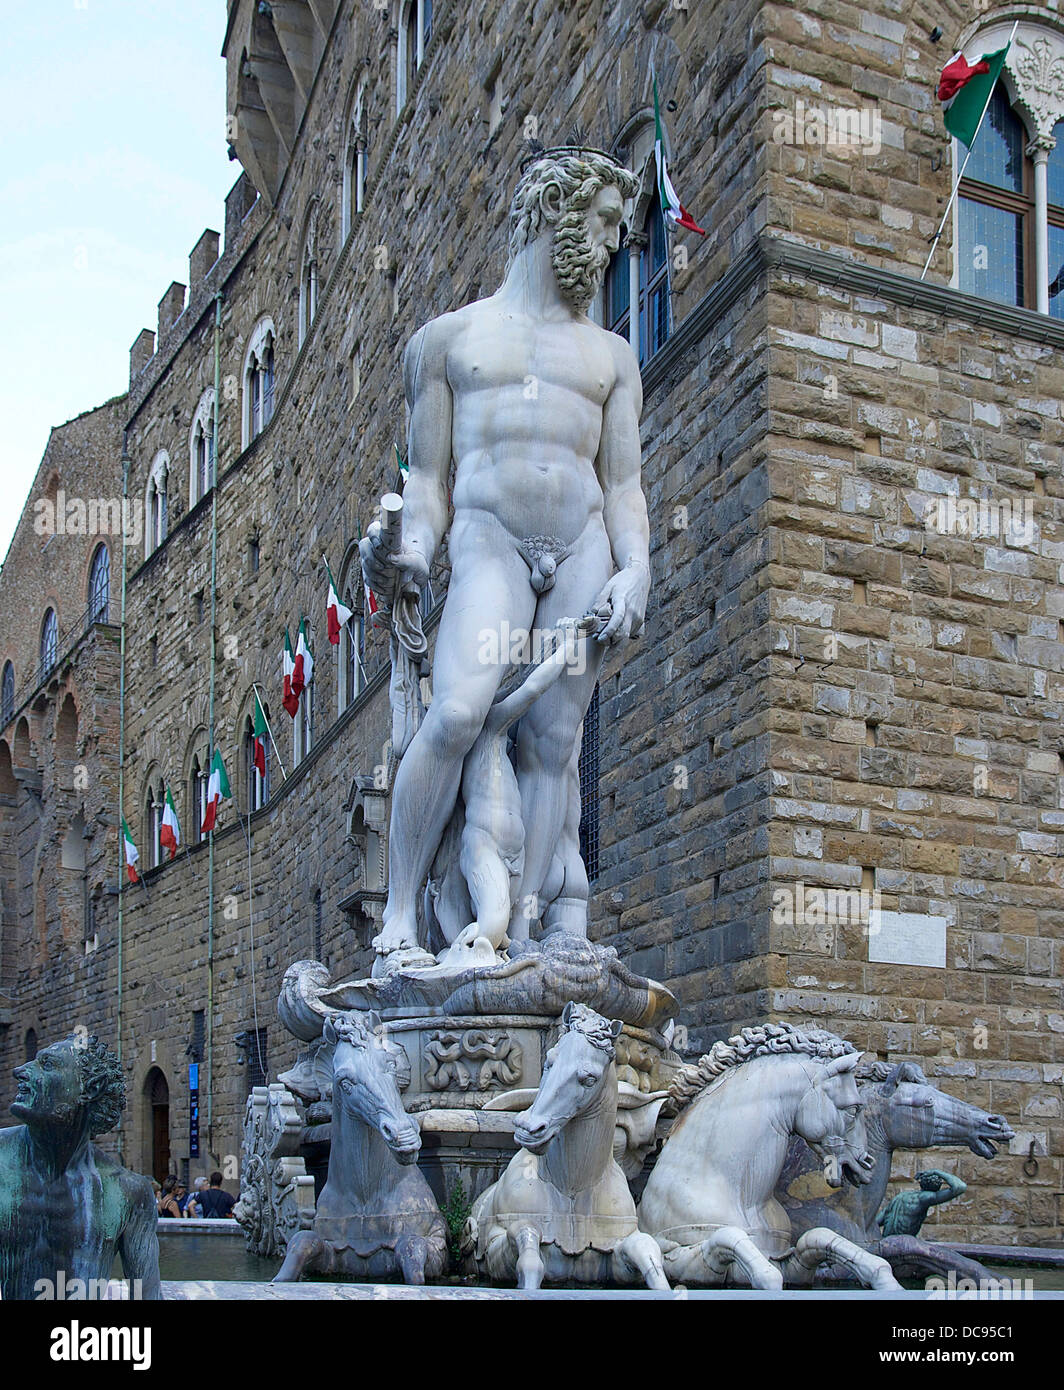 The 'Fountain of Neptune' by Giambologna, fragment, Piazza della Signoria, Florence, Italy Stock Photo